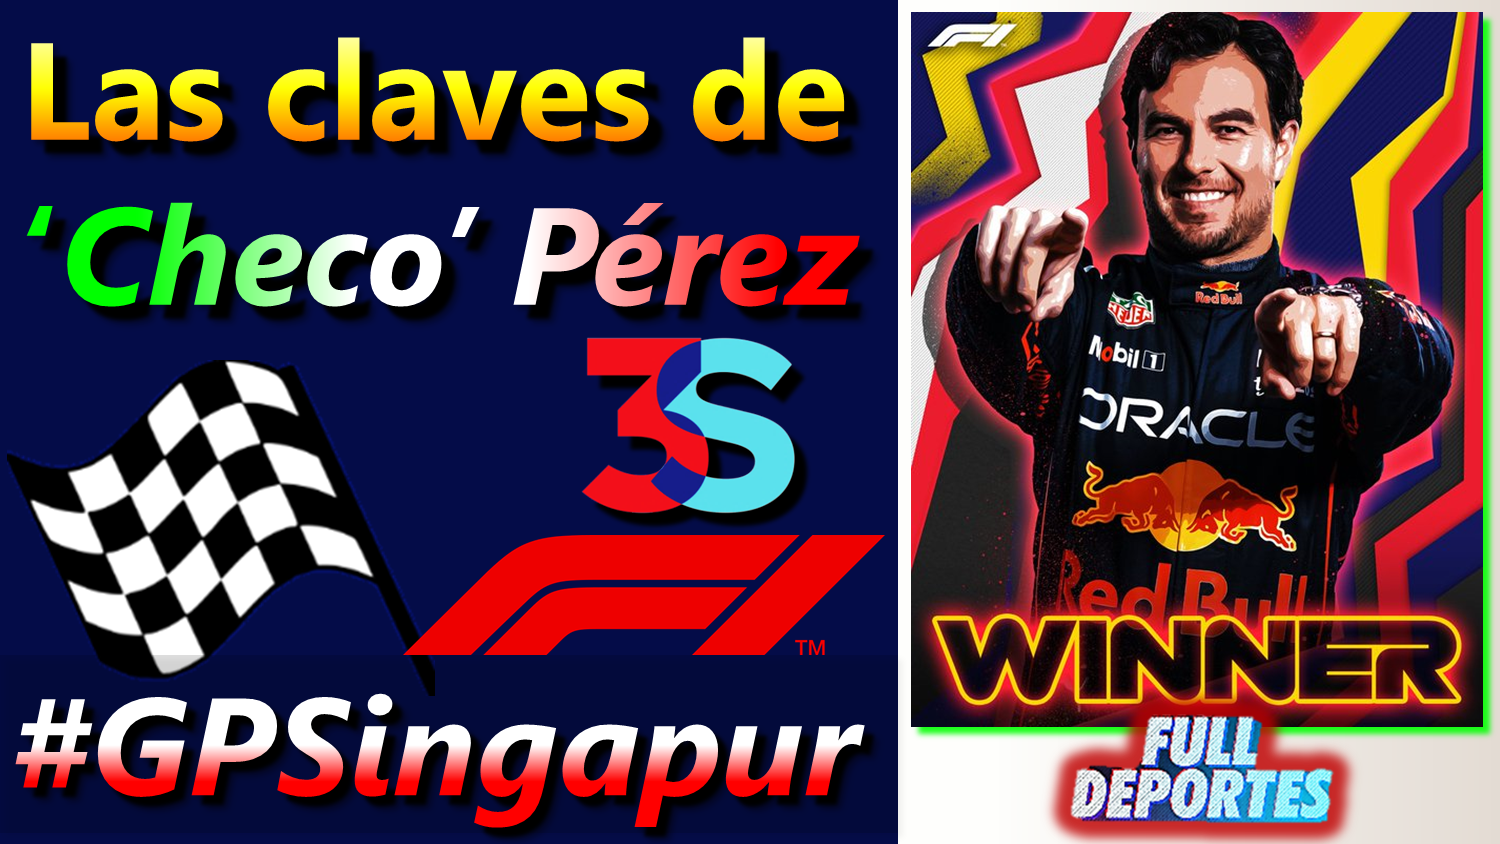 Las Claves de la Victoria de Sergio Pérez Porqué fue penalizado acontmotor Full Deportes Hive.png